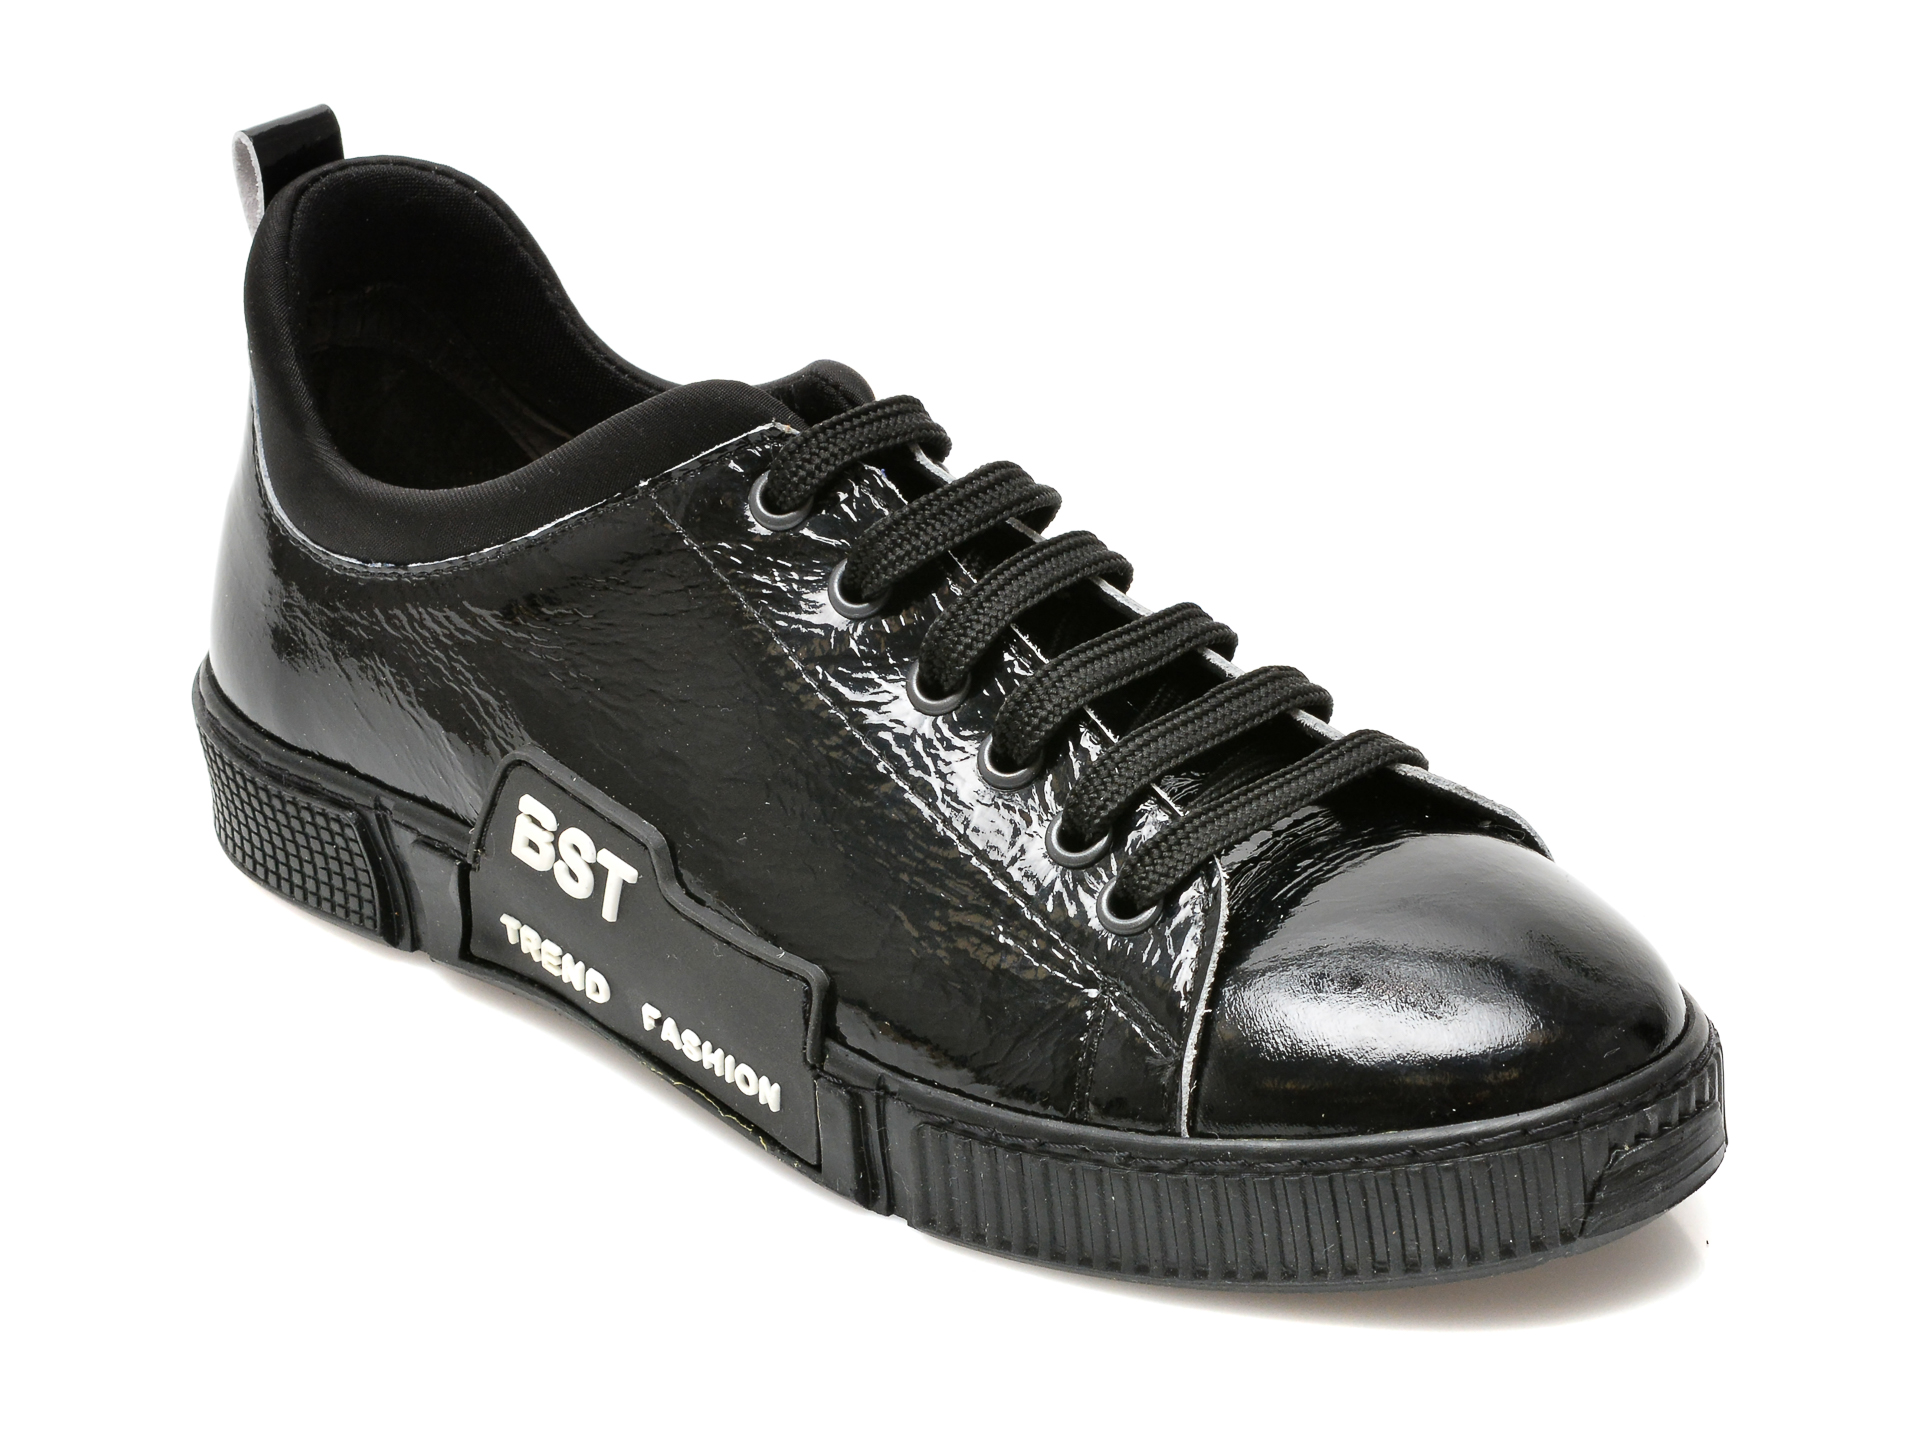 Pantofi BESTELLO negri, 1303, din piele naturala lacuita BESTELLO